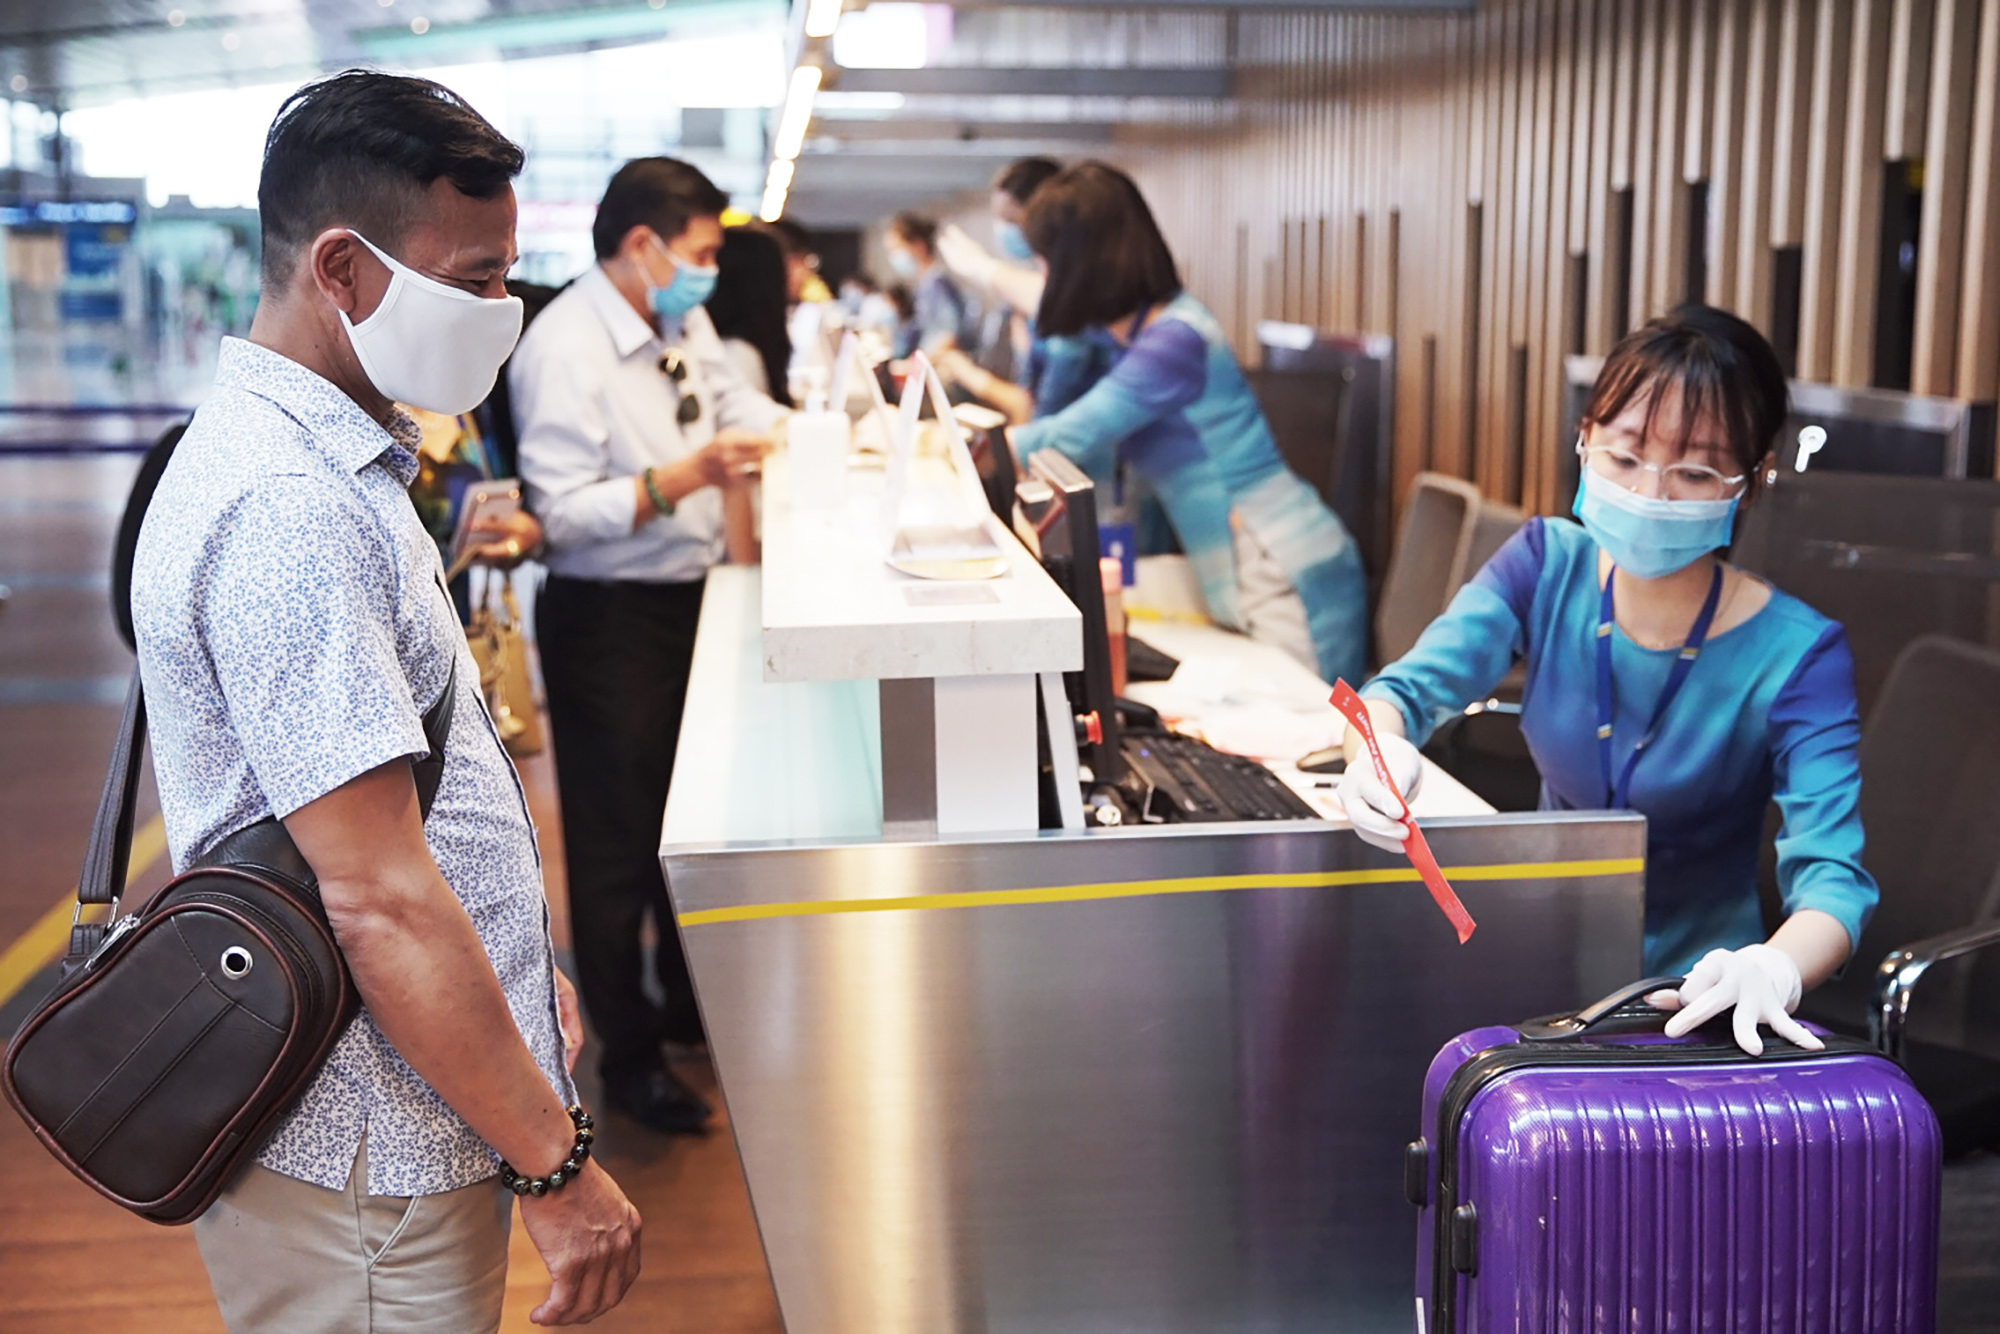 Hành khách làm thủ tục hàng không đi chuyến Vân Đồn - TP Hồ Chí Minh trong ngày đầu mở lại đường bay thương mại tại Cảng HK QT Vân Đồn